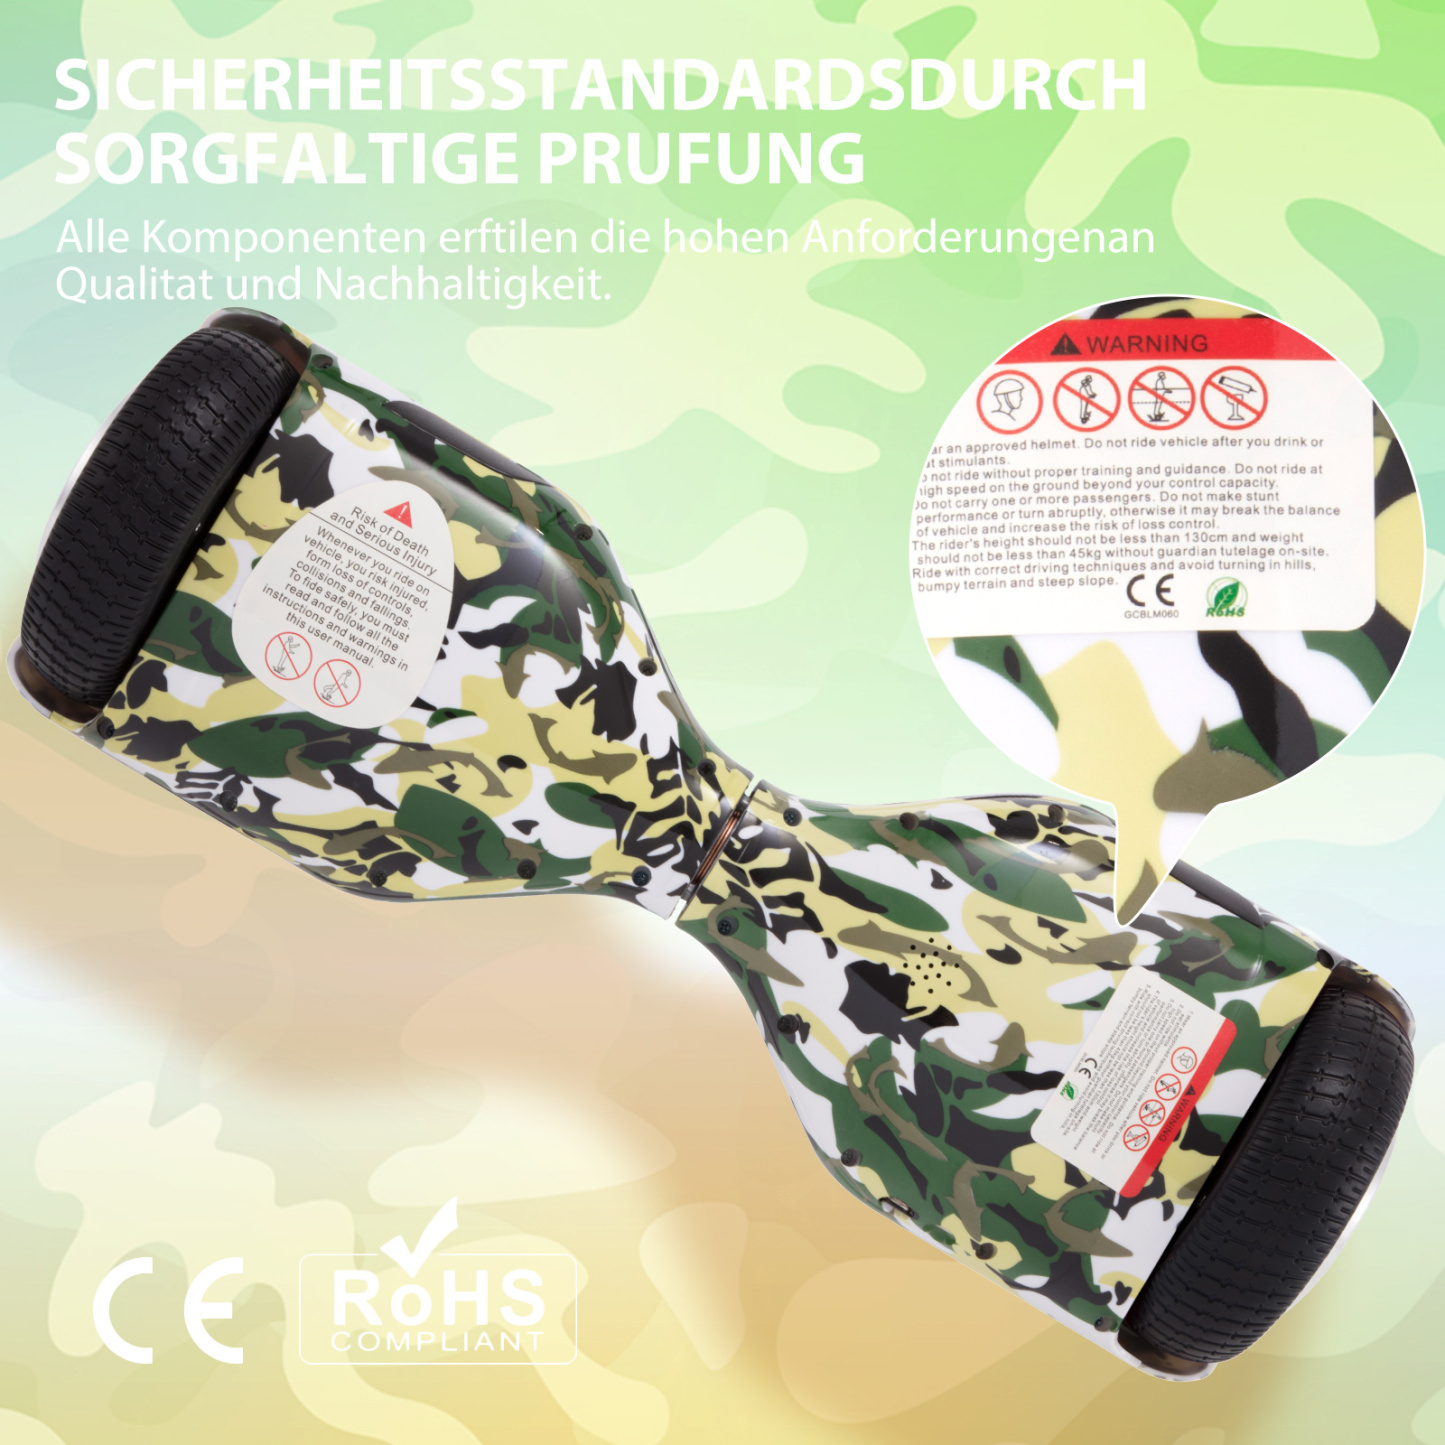 Neues 6,5" Camouflage grünes Hoverboard für Kinder, mit Bluetooth Musik Lautsprecher und Disco LED Licht - 500W 12km/h